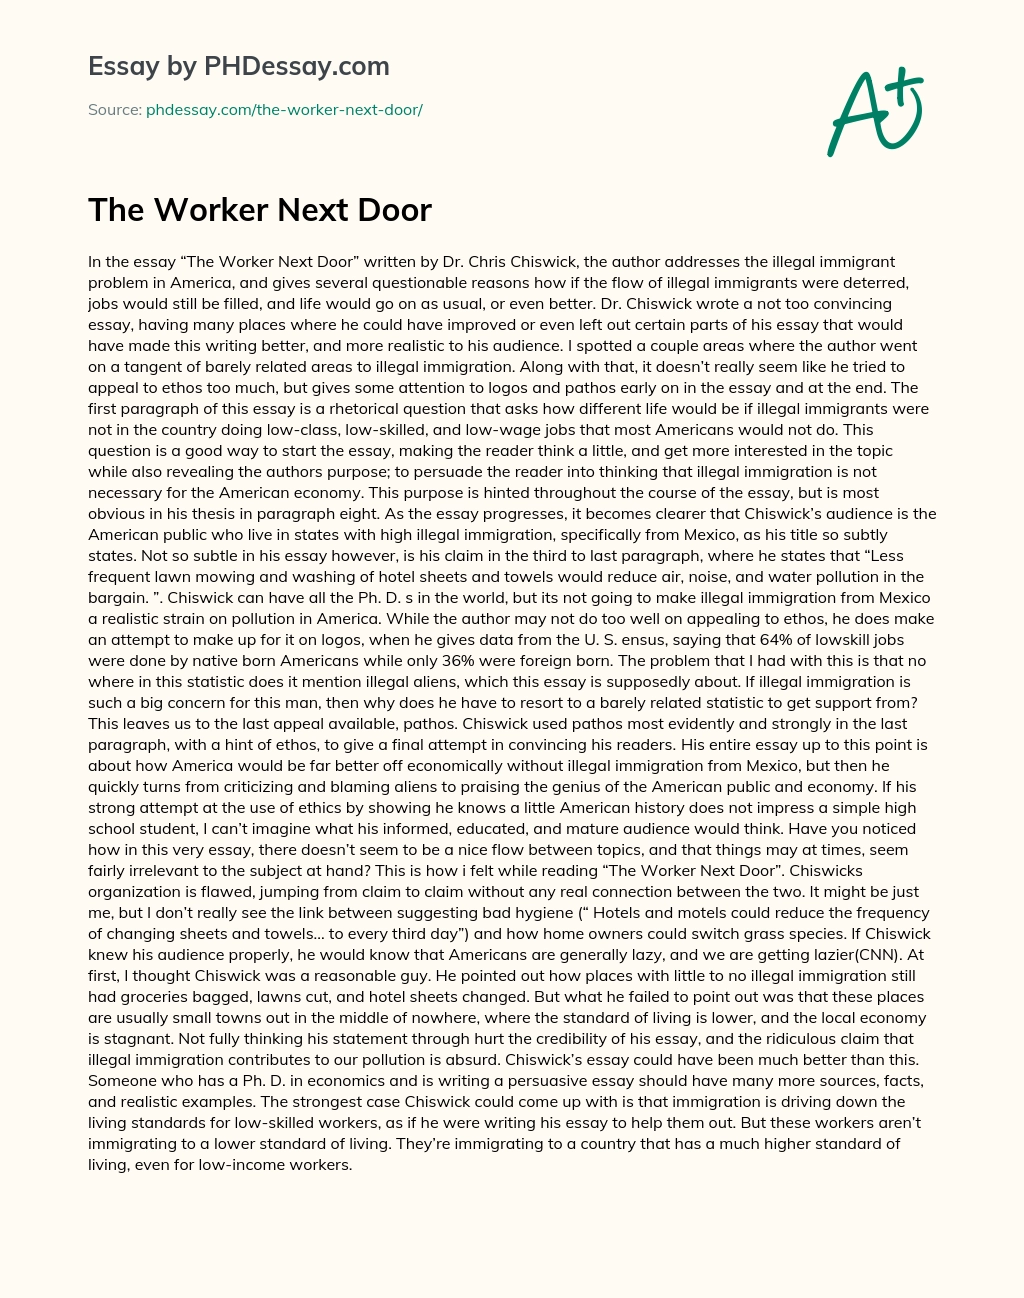 The Worker Next Door essay